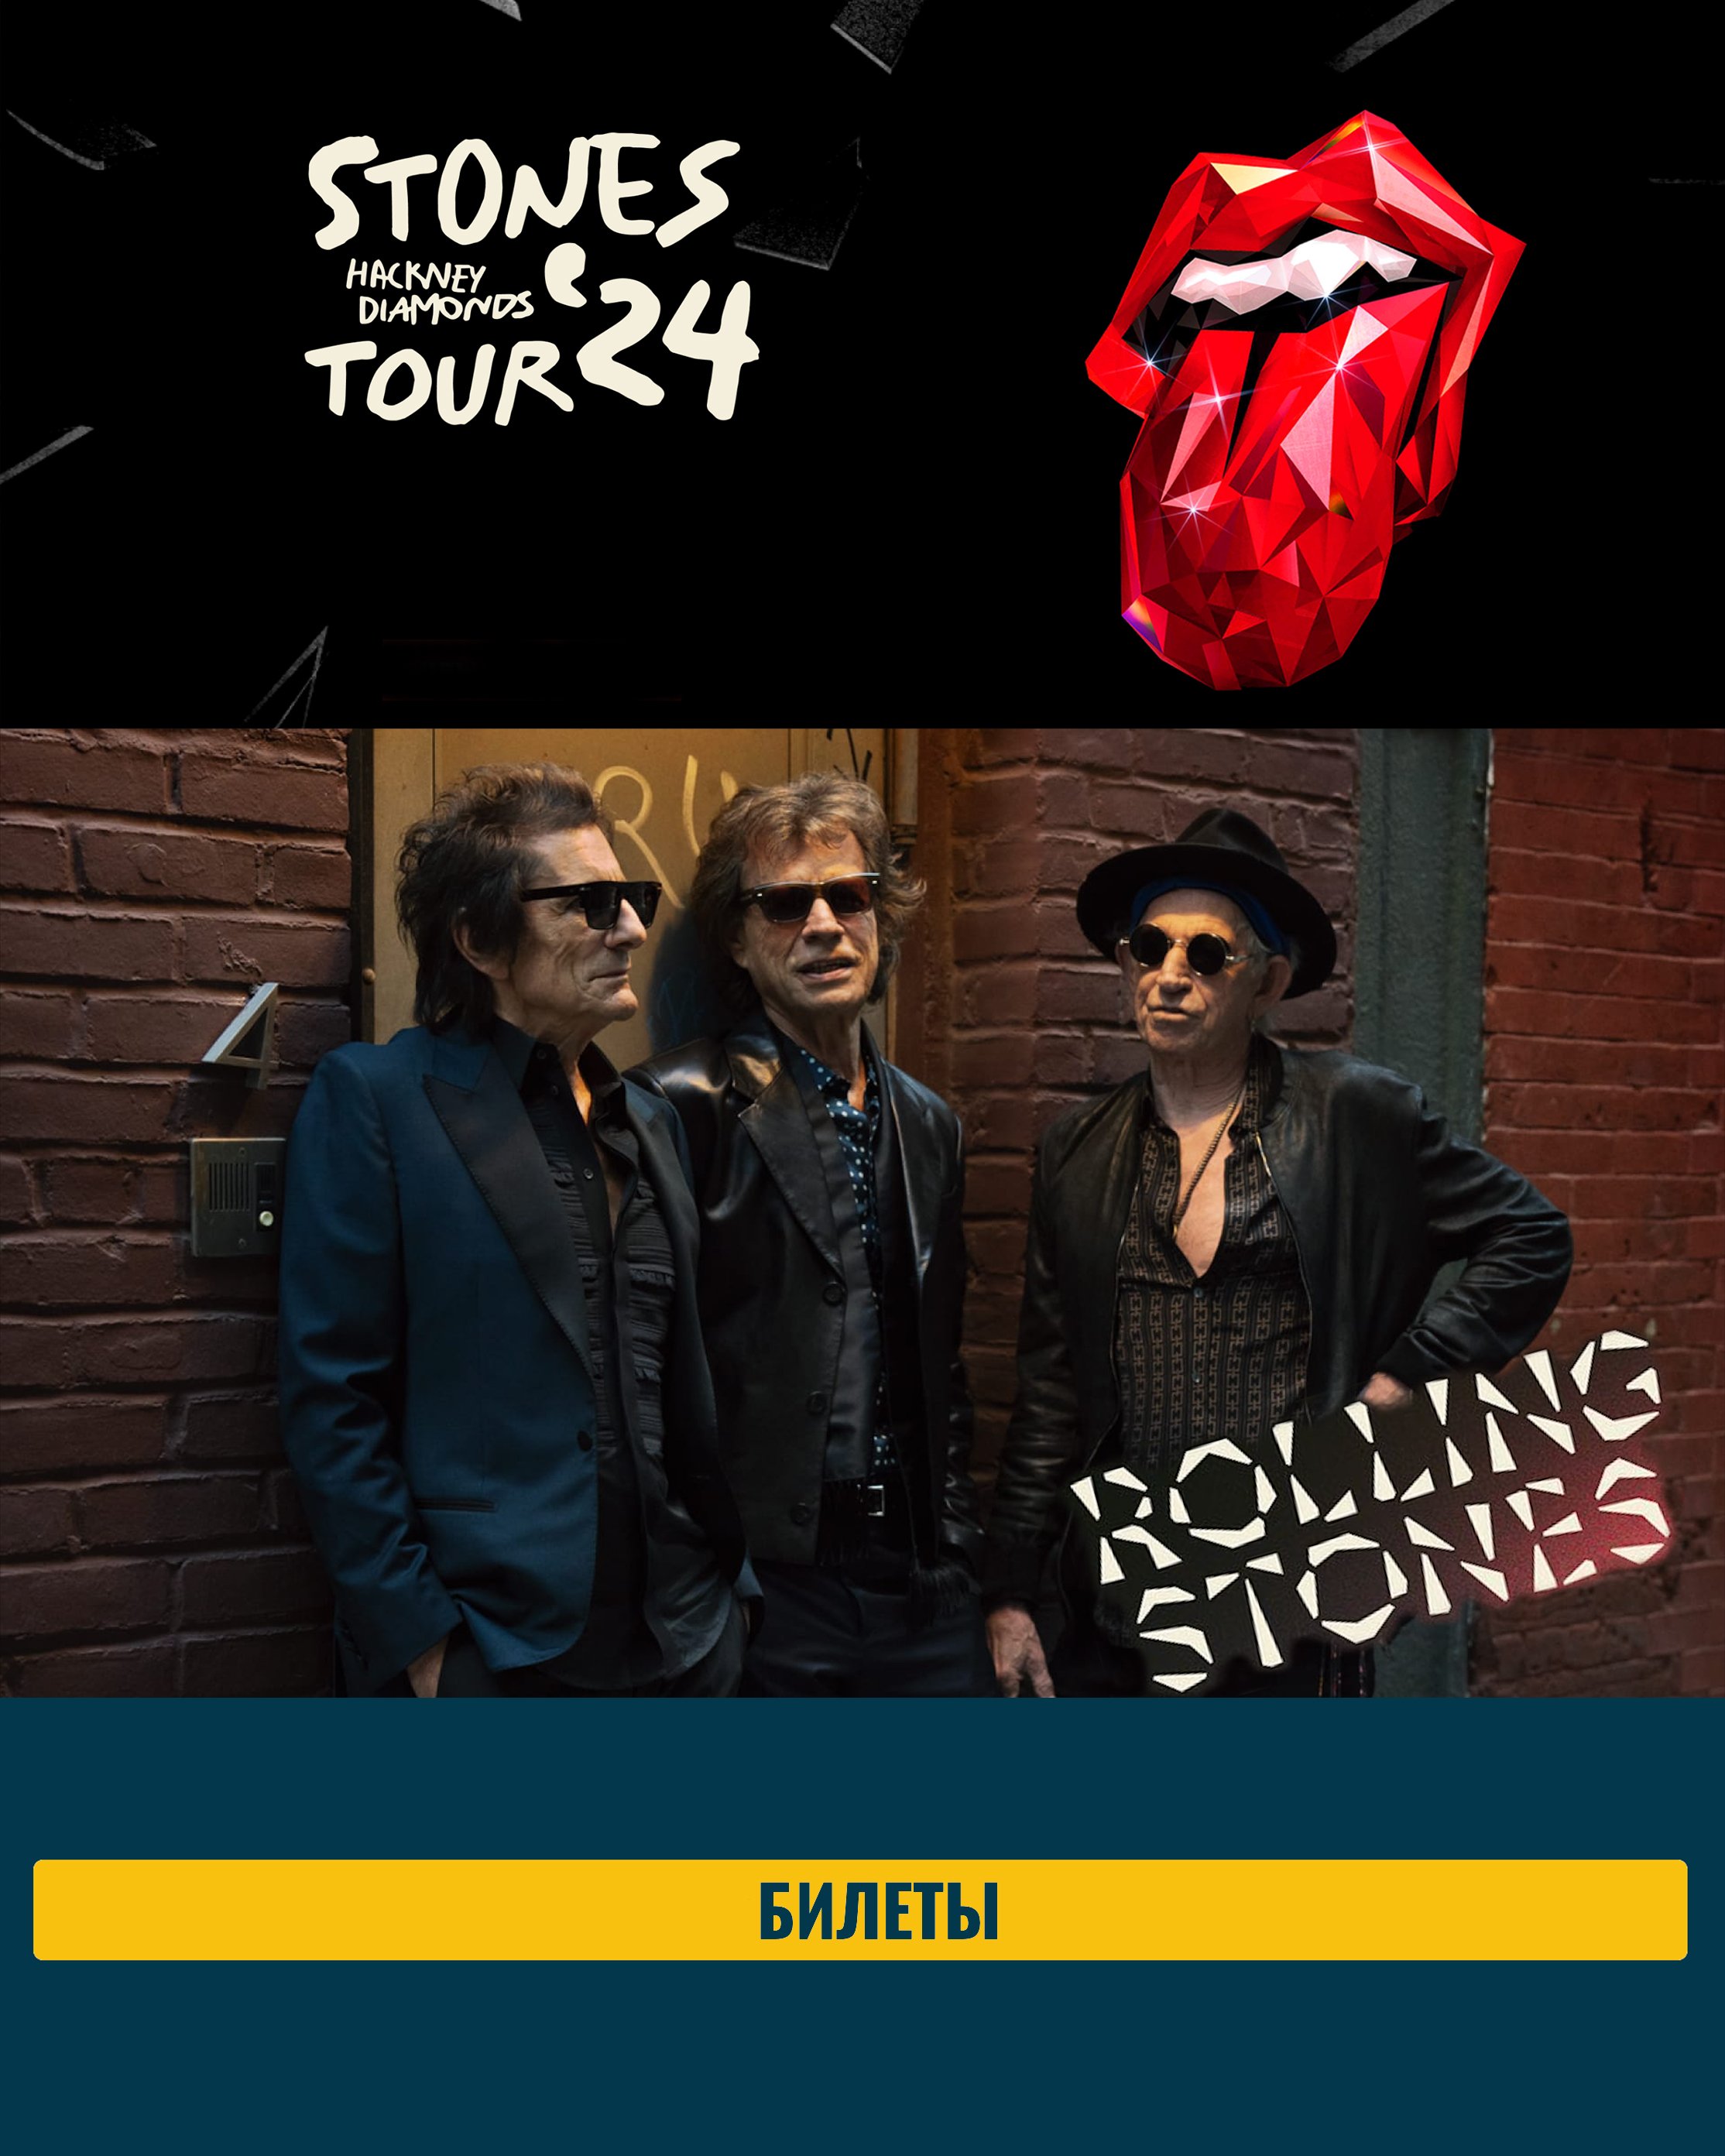 Концерт The Rolling Stones в Нью-Йорке.jpg